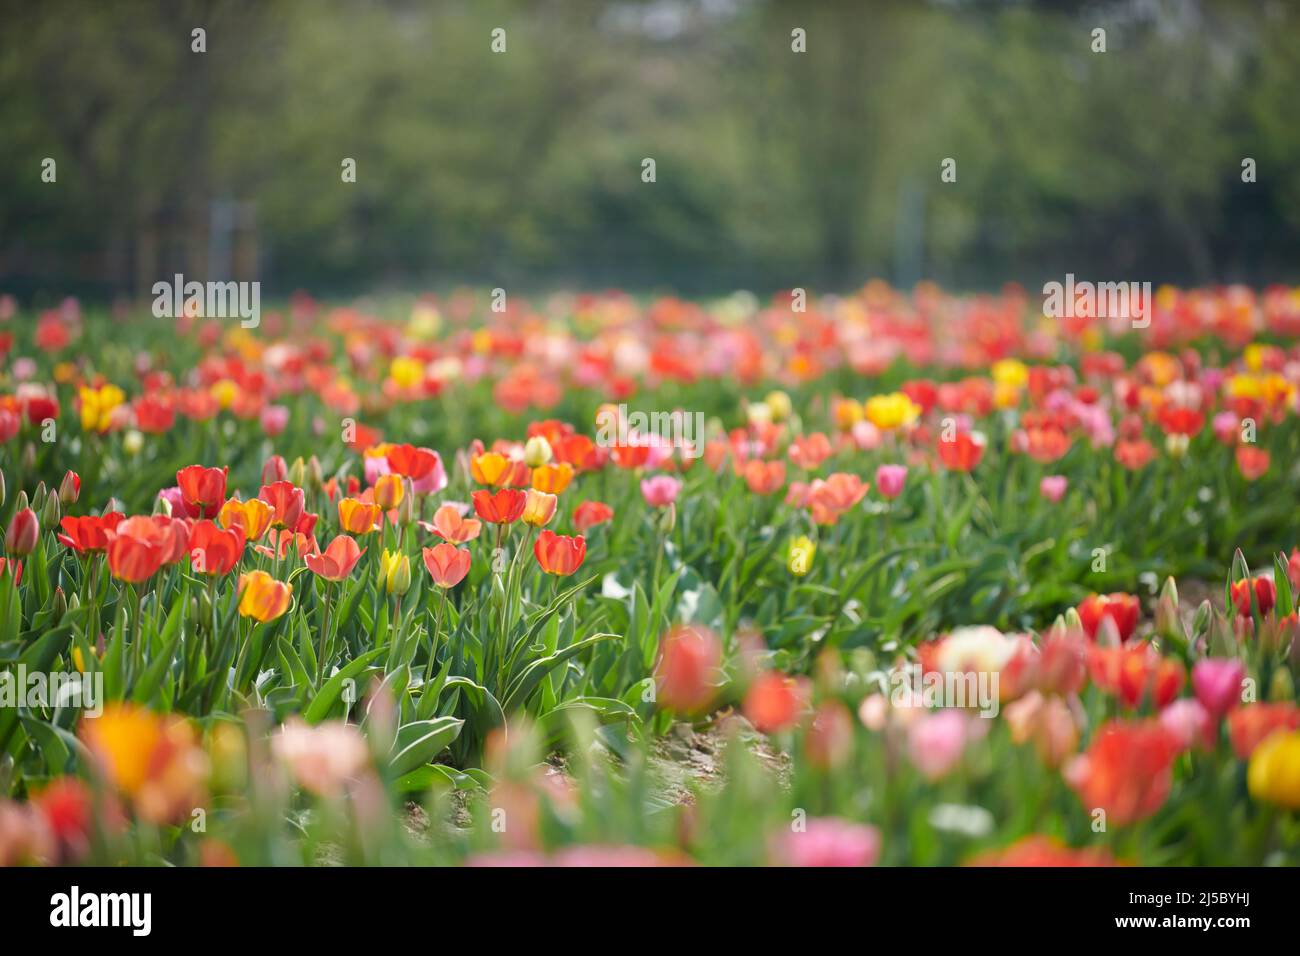 Feld mit Tulpen zum selber pfluecken. Tulpen in verschiedenen Farben eines Landwirts laden zum selber pluecken ein. Stock Photo